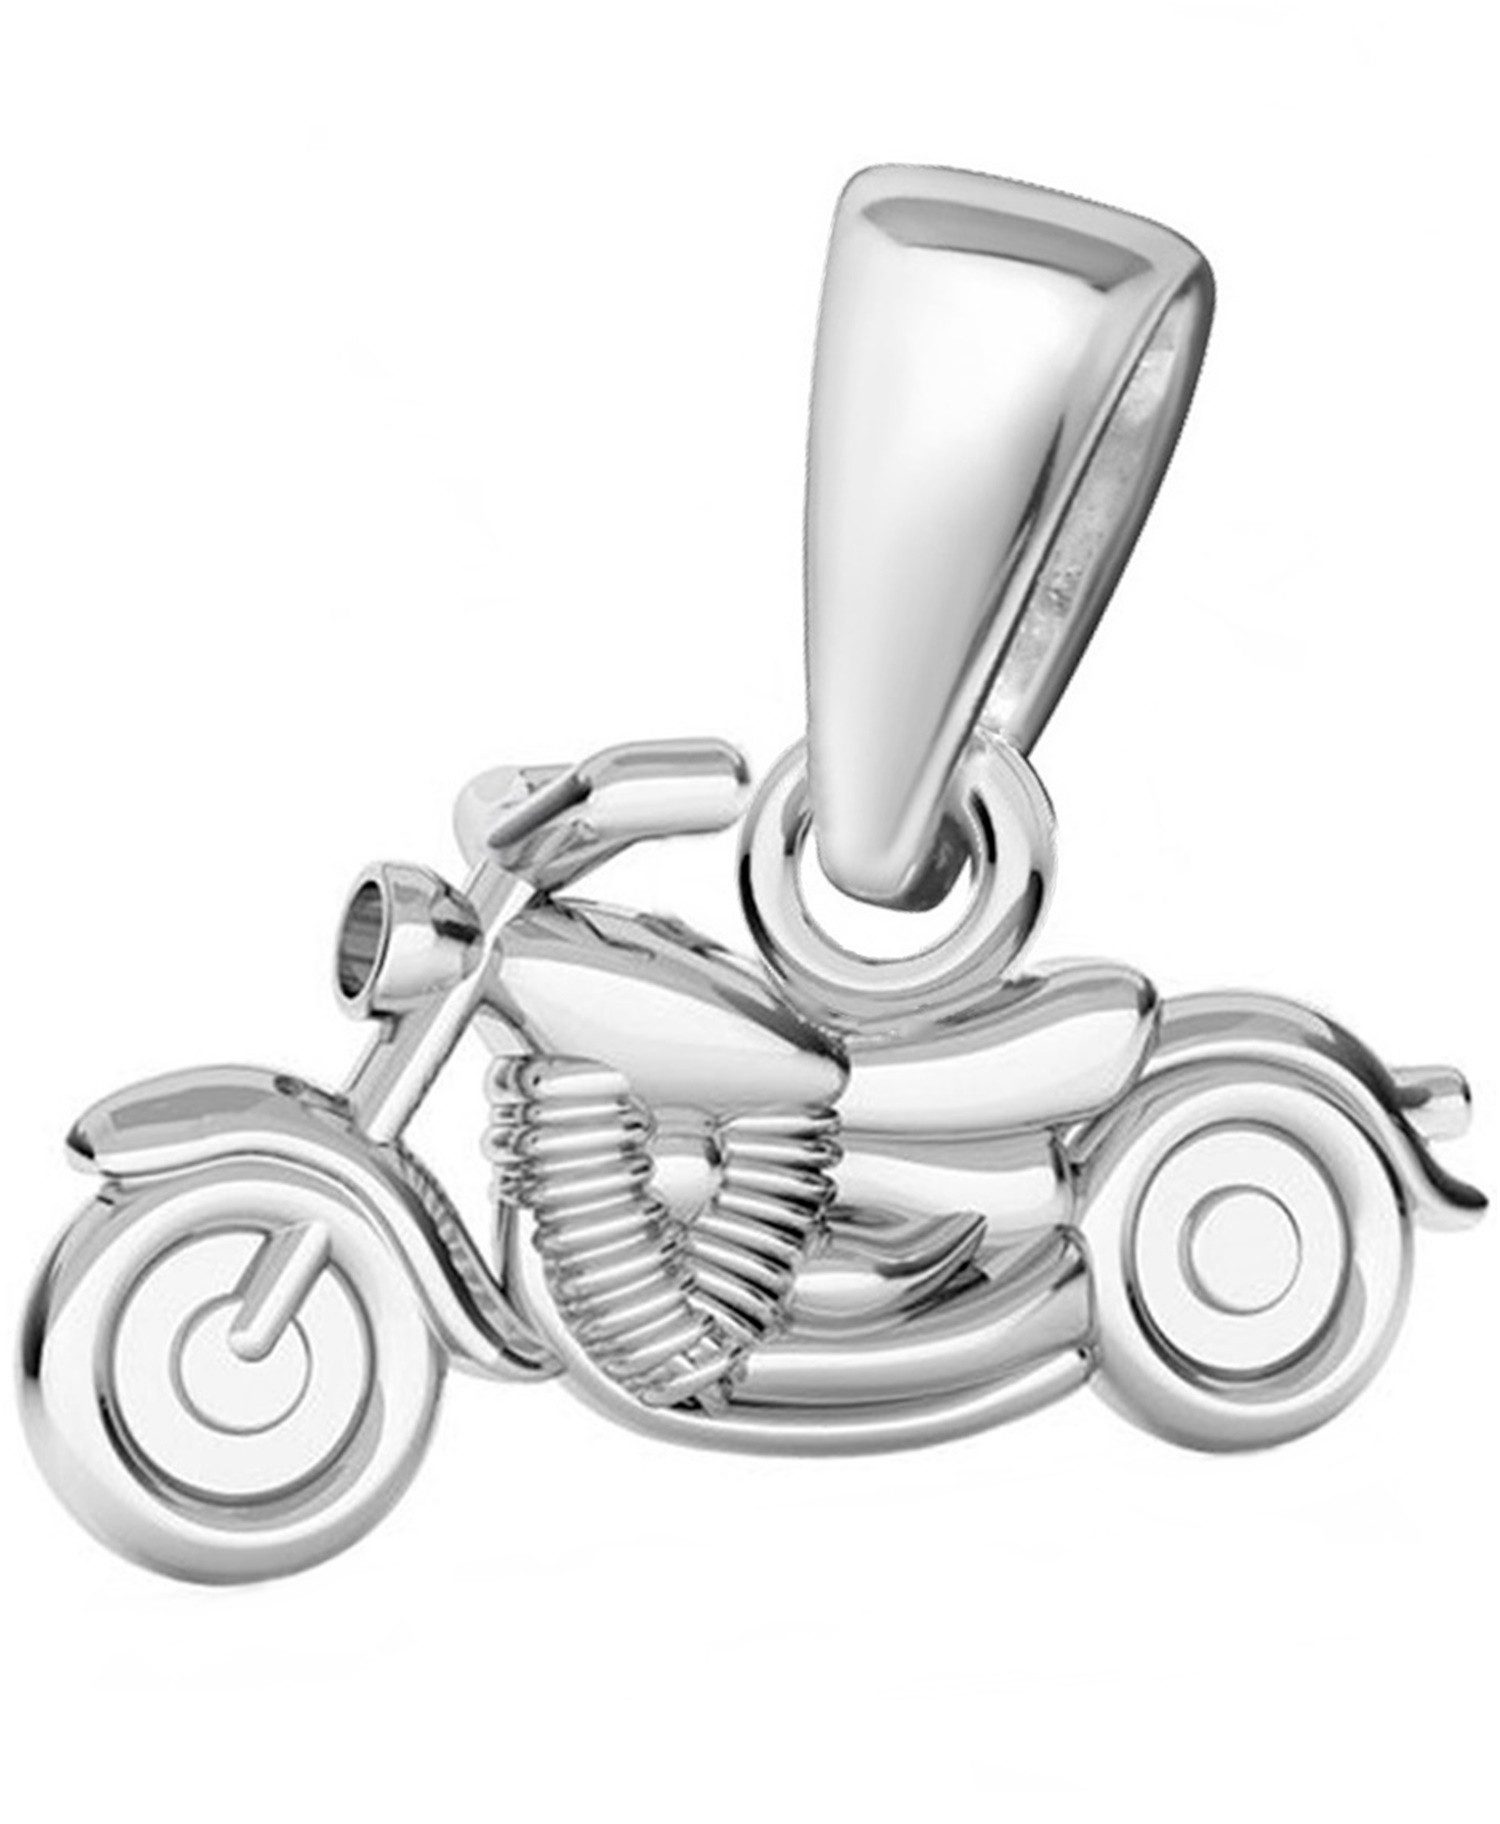 Goldene Hufeisen Kettenanhänger Mini Motorrad Anhänger für Halskette 925 Silber Kettenanhänger (1 Stück, inkl. Etui)